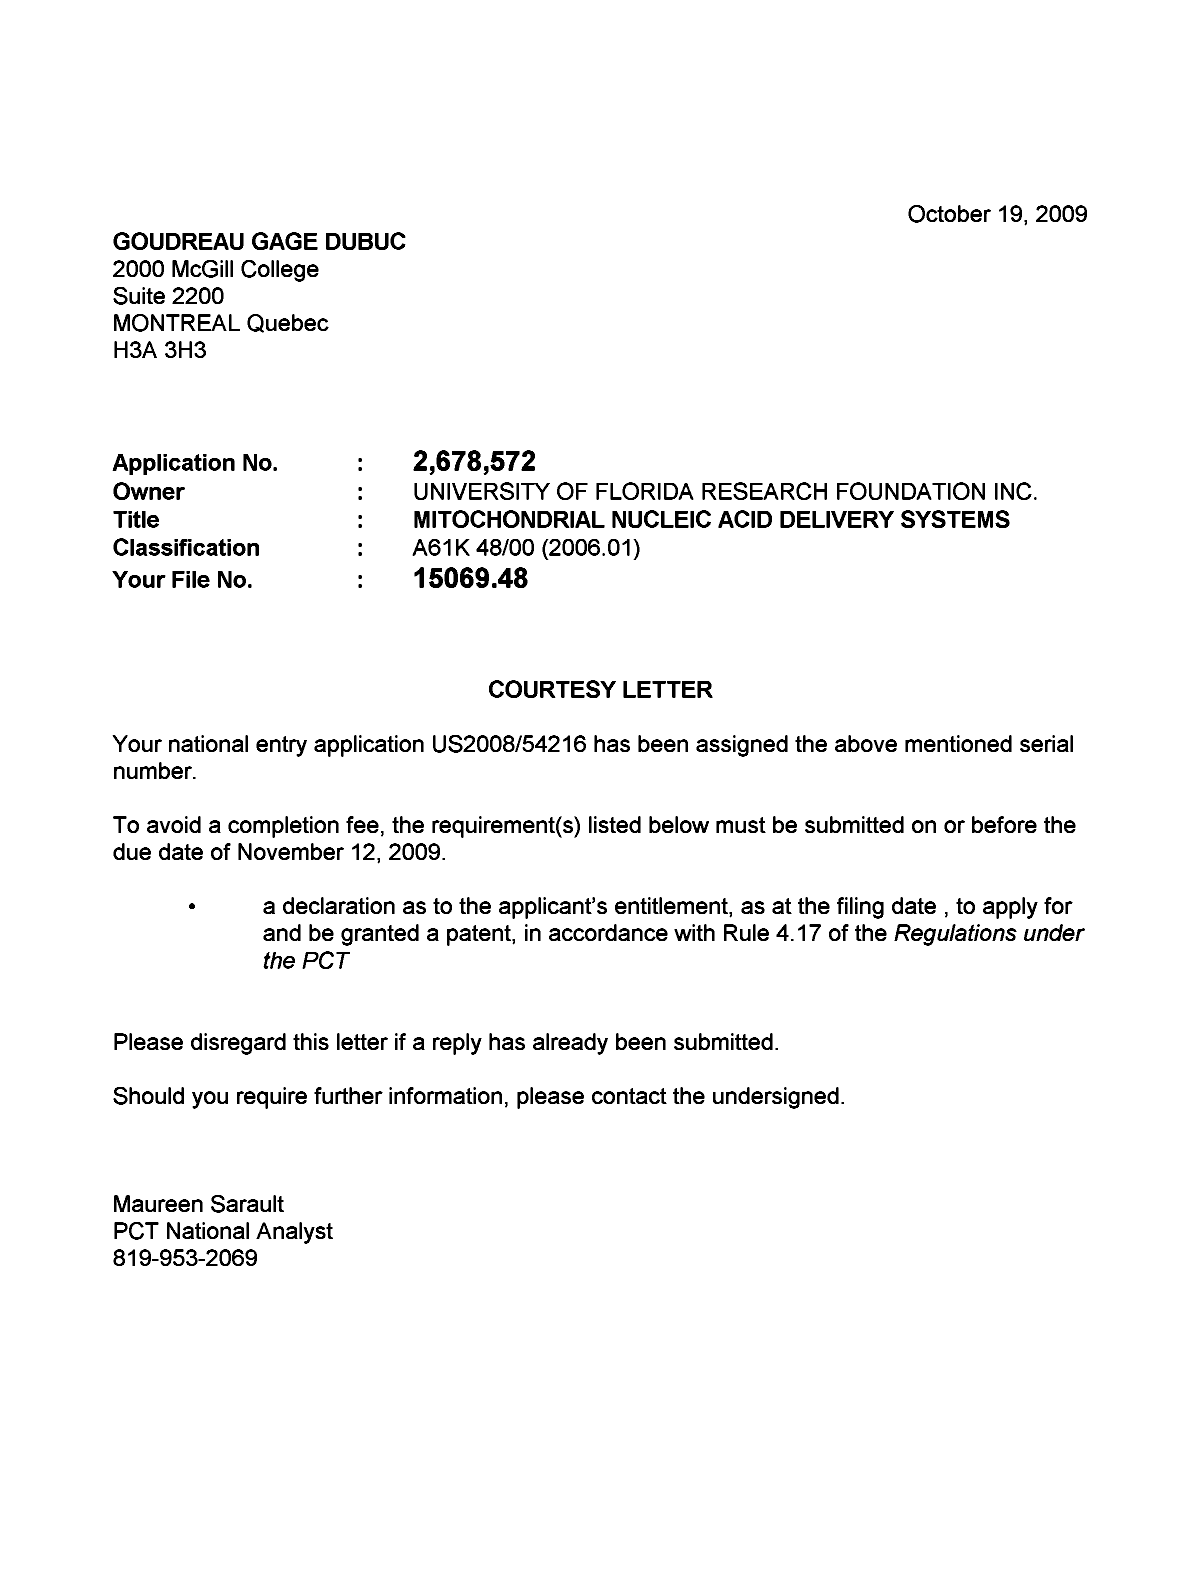 Document de brevet canadien 2678572. Correspondance 20091019. Image 1 de 1